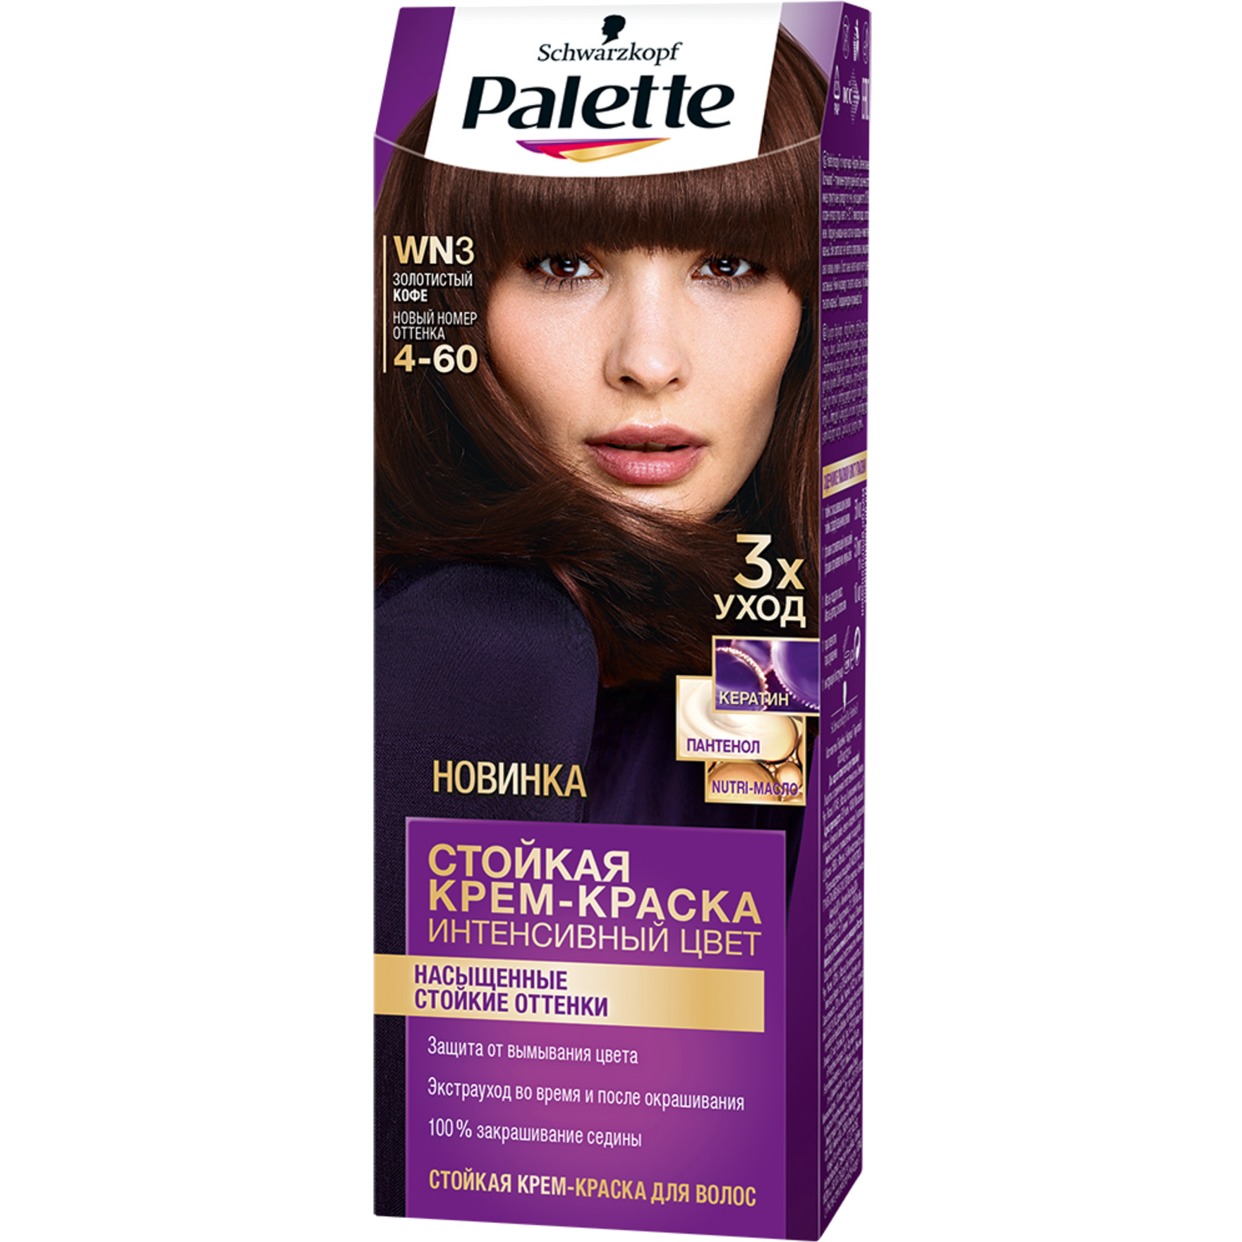 Крем-краска для волос Palette 4-60 по акции в Пятерочке